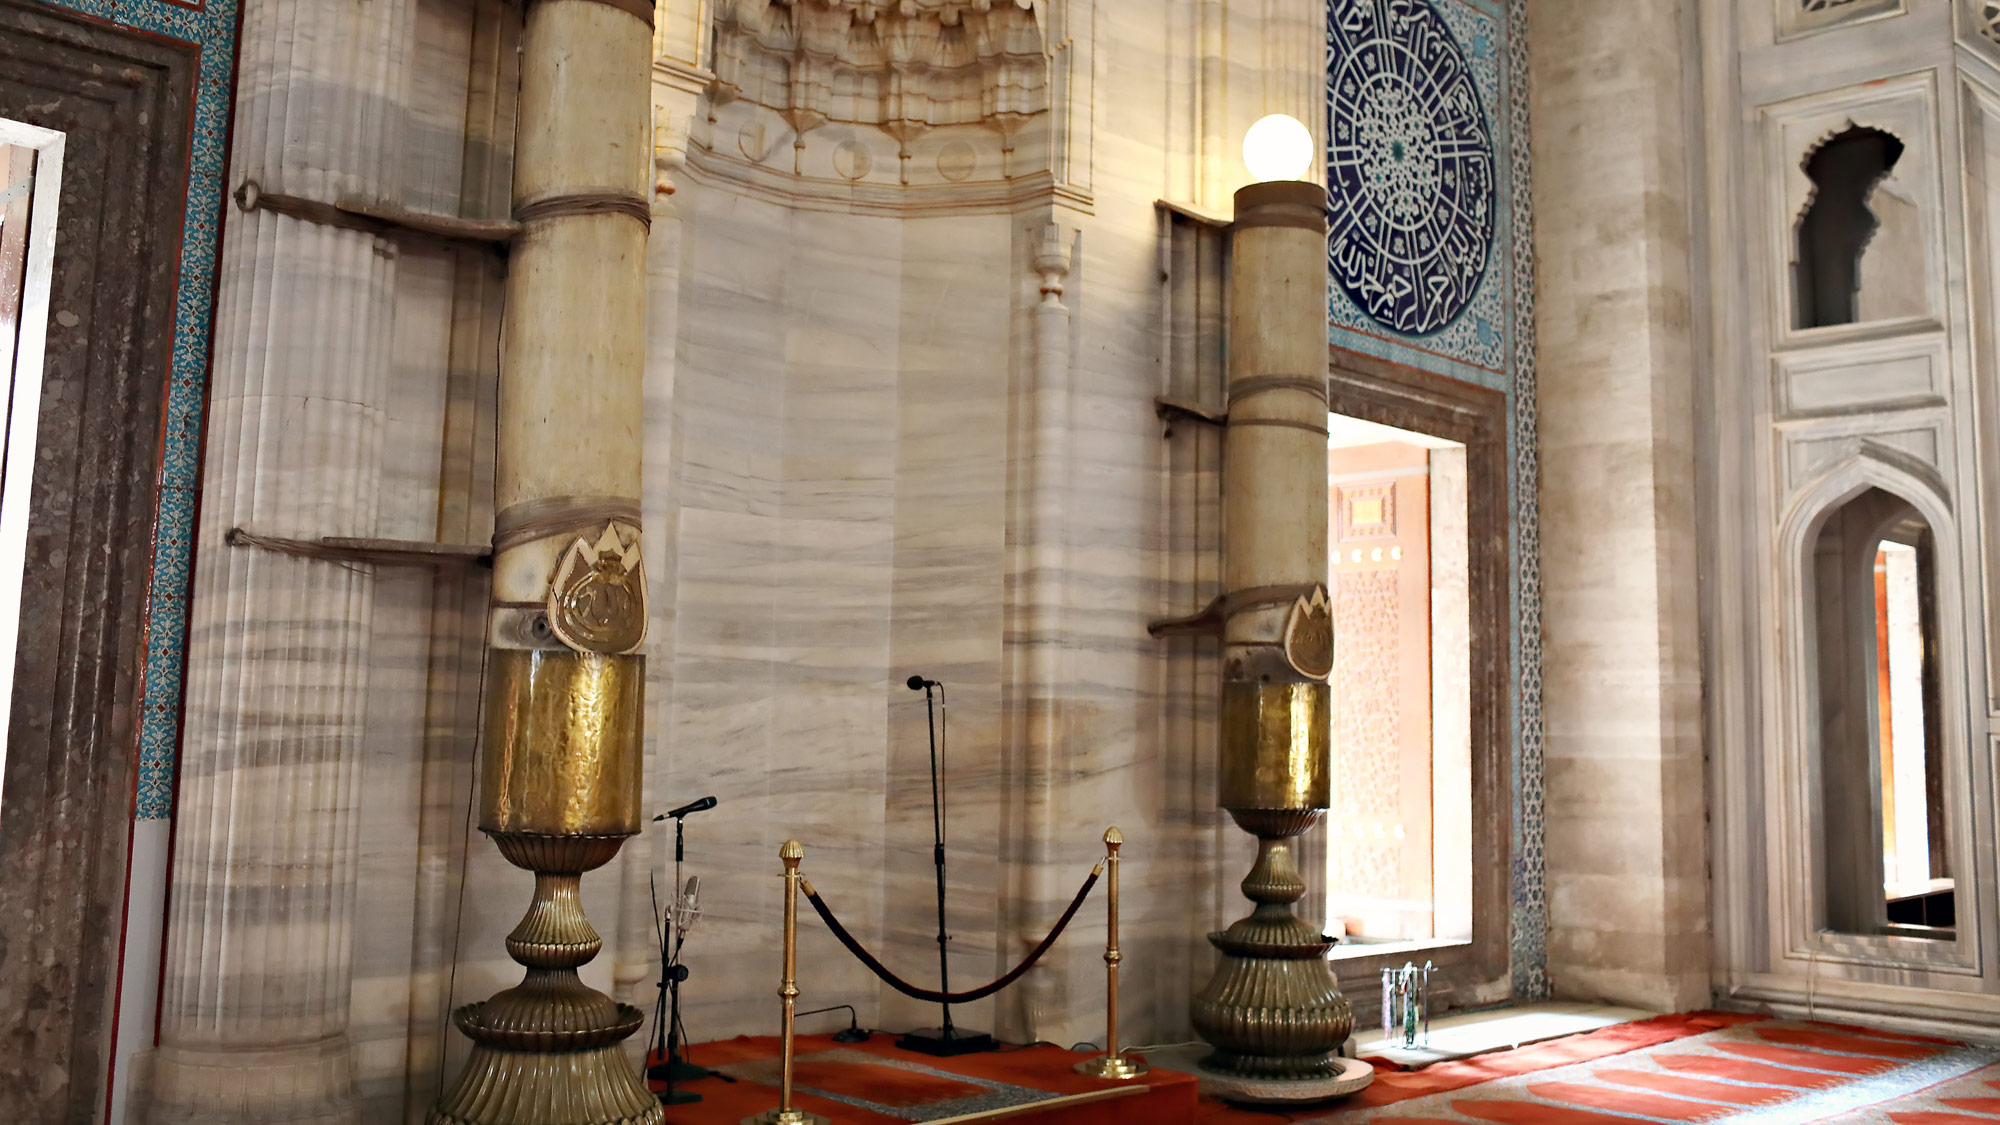 the mihrab in Suleymaniye mosque